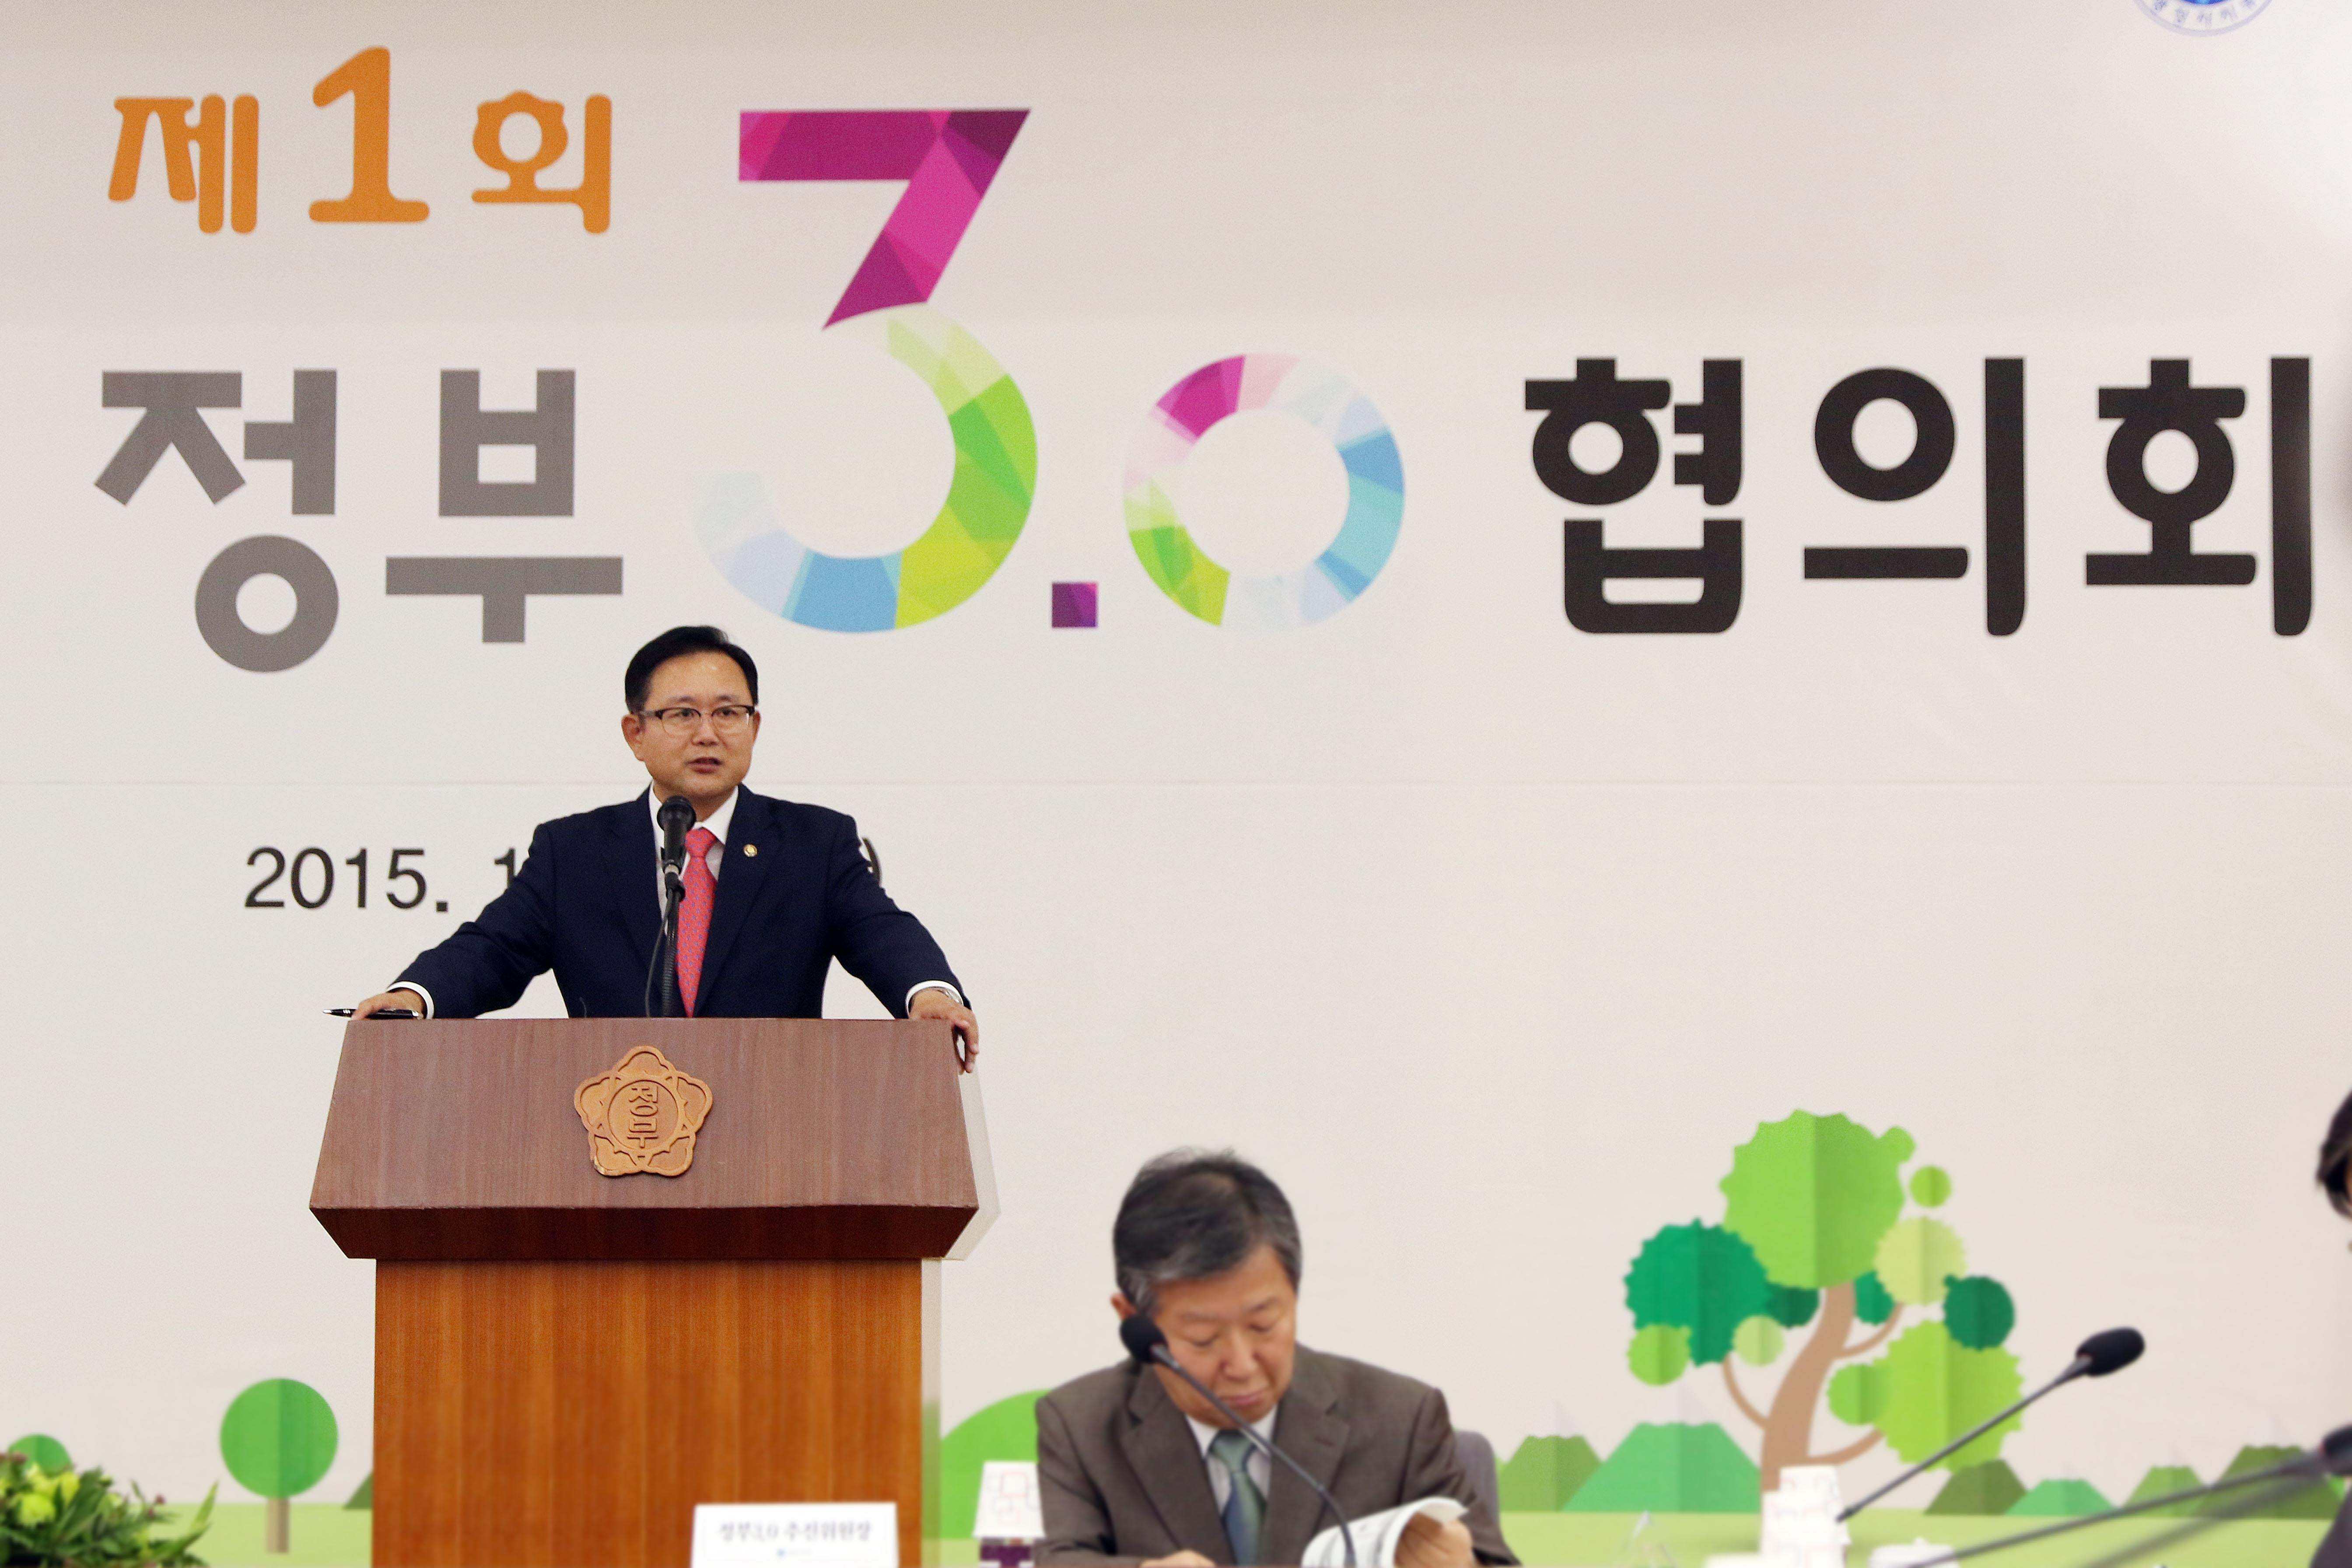 제1회 공공기관 정부3.0 협의회 개최